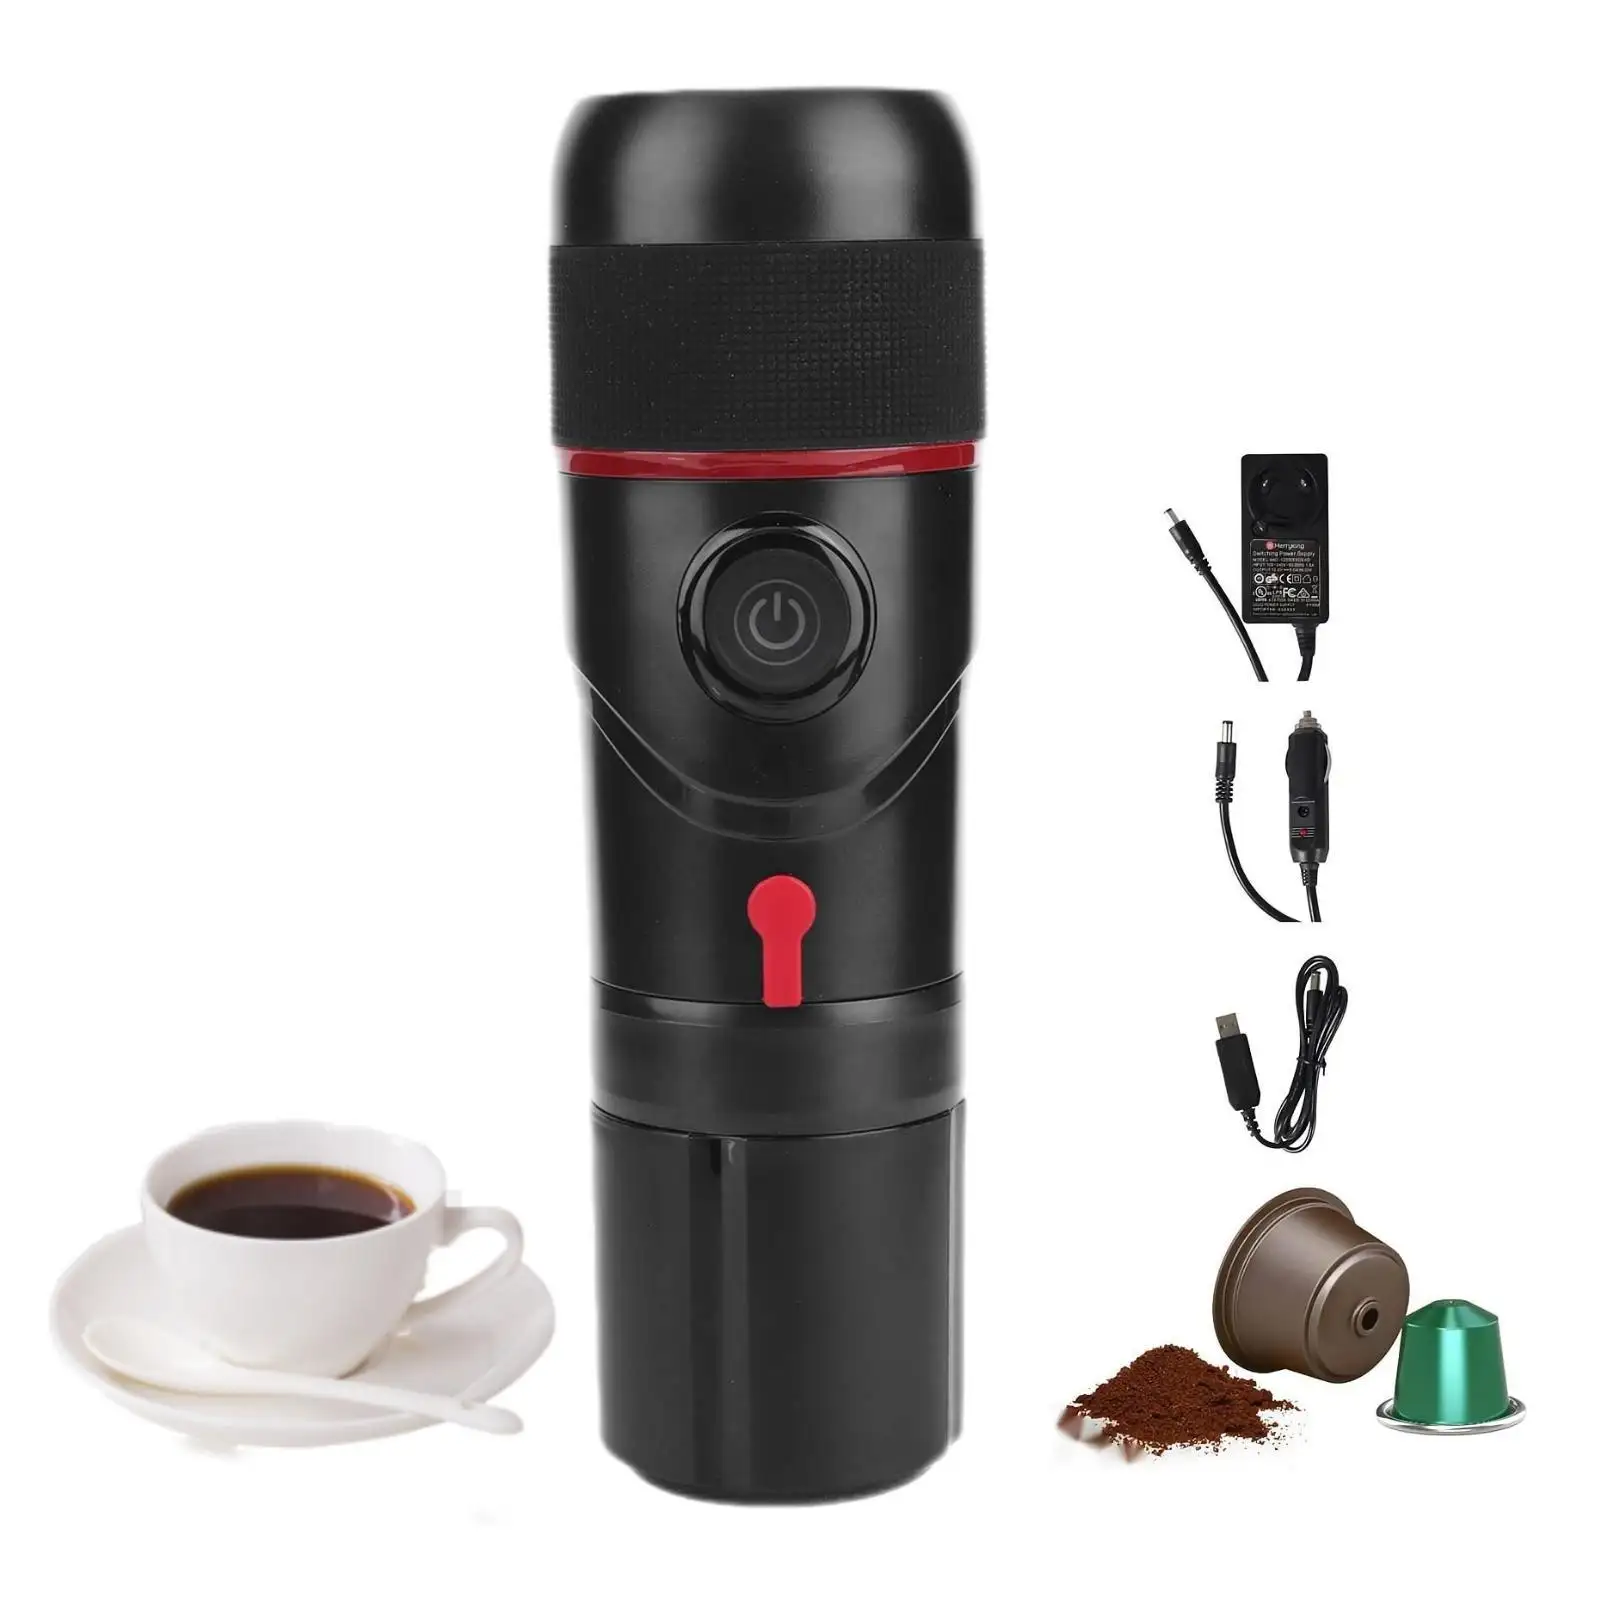 All-in-One tragbare 20-Bar-Kaffeemaschine Tragbare automat isierte Alarm-kommerzielle Kaffee-Espresso maschine eingebaut